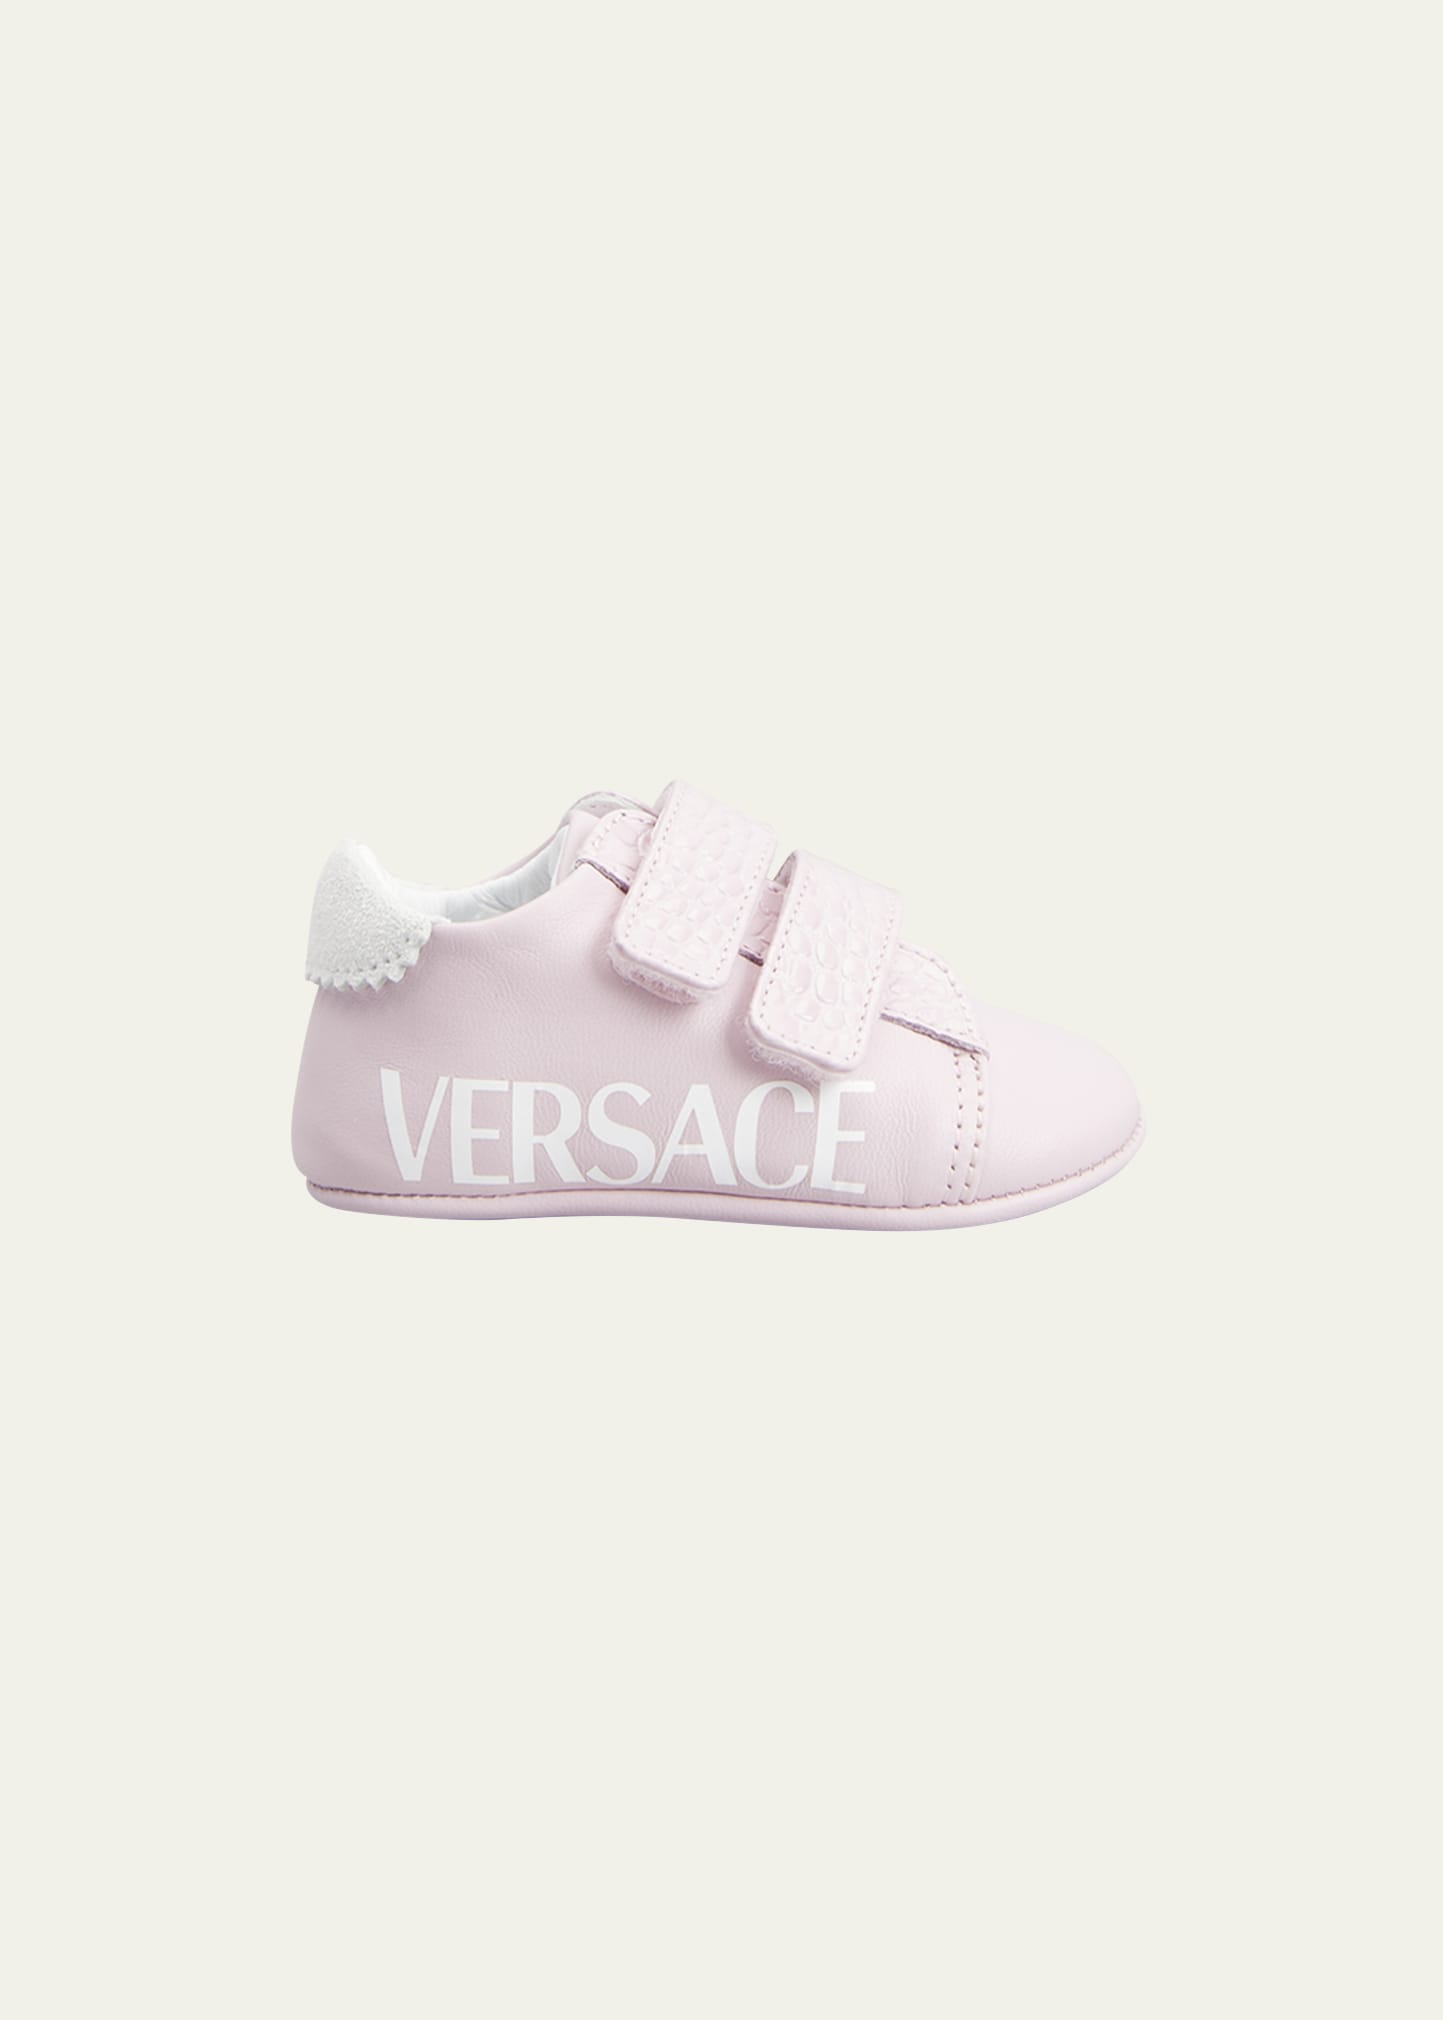 Versace Kid's Pre-Walker Grip-Trap Sneakers, Baby